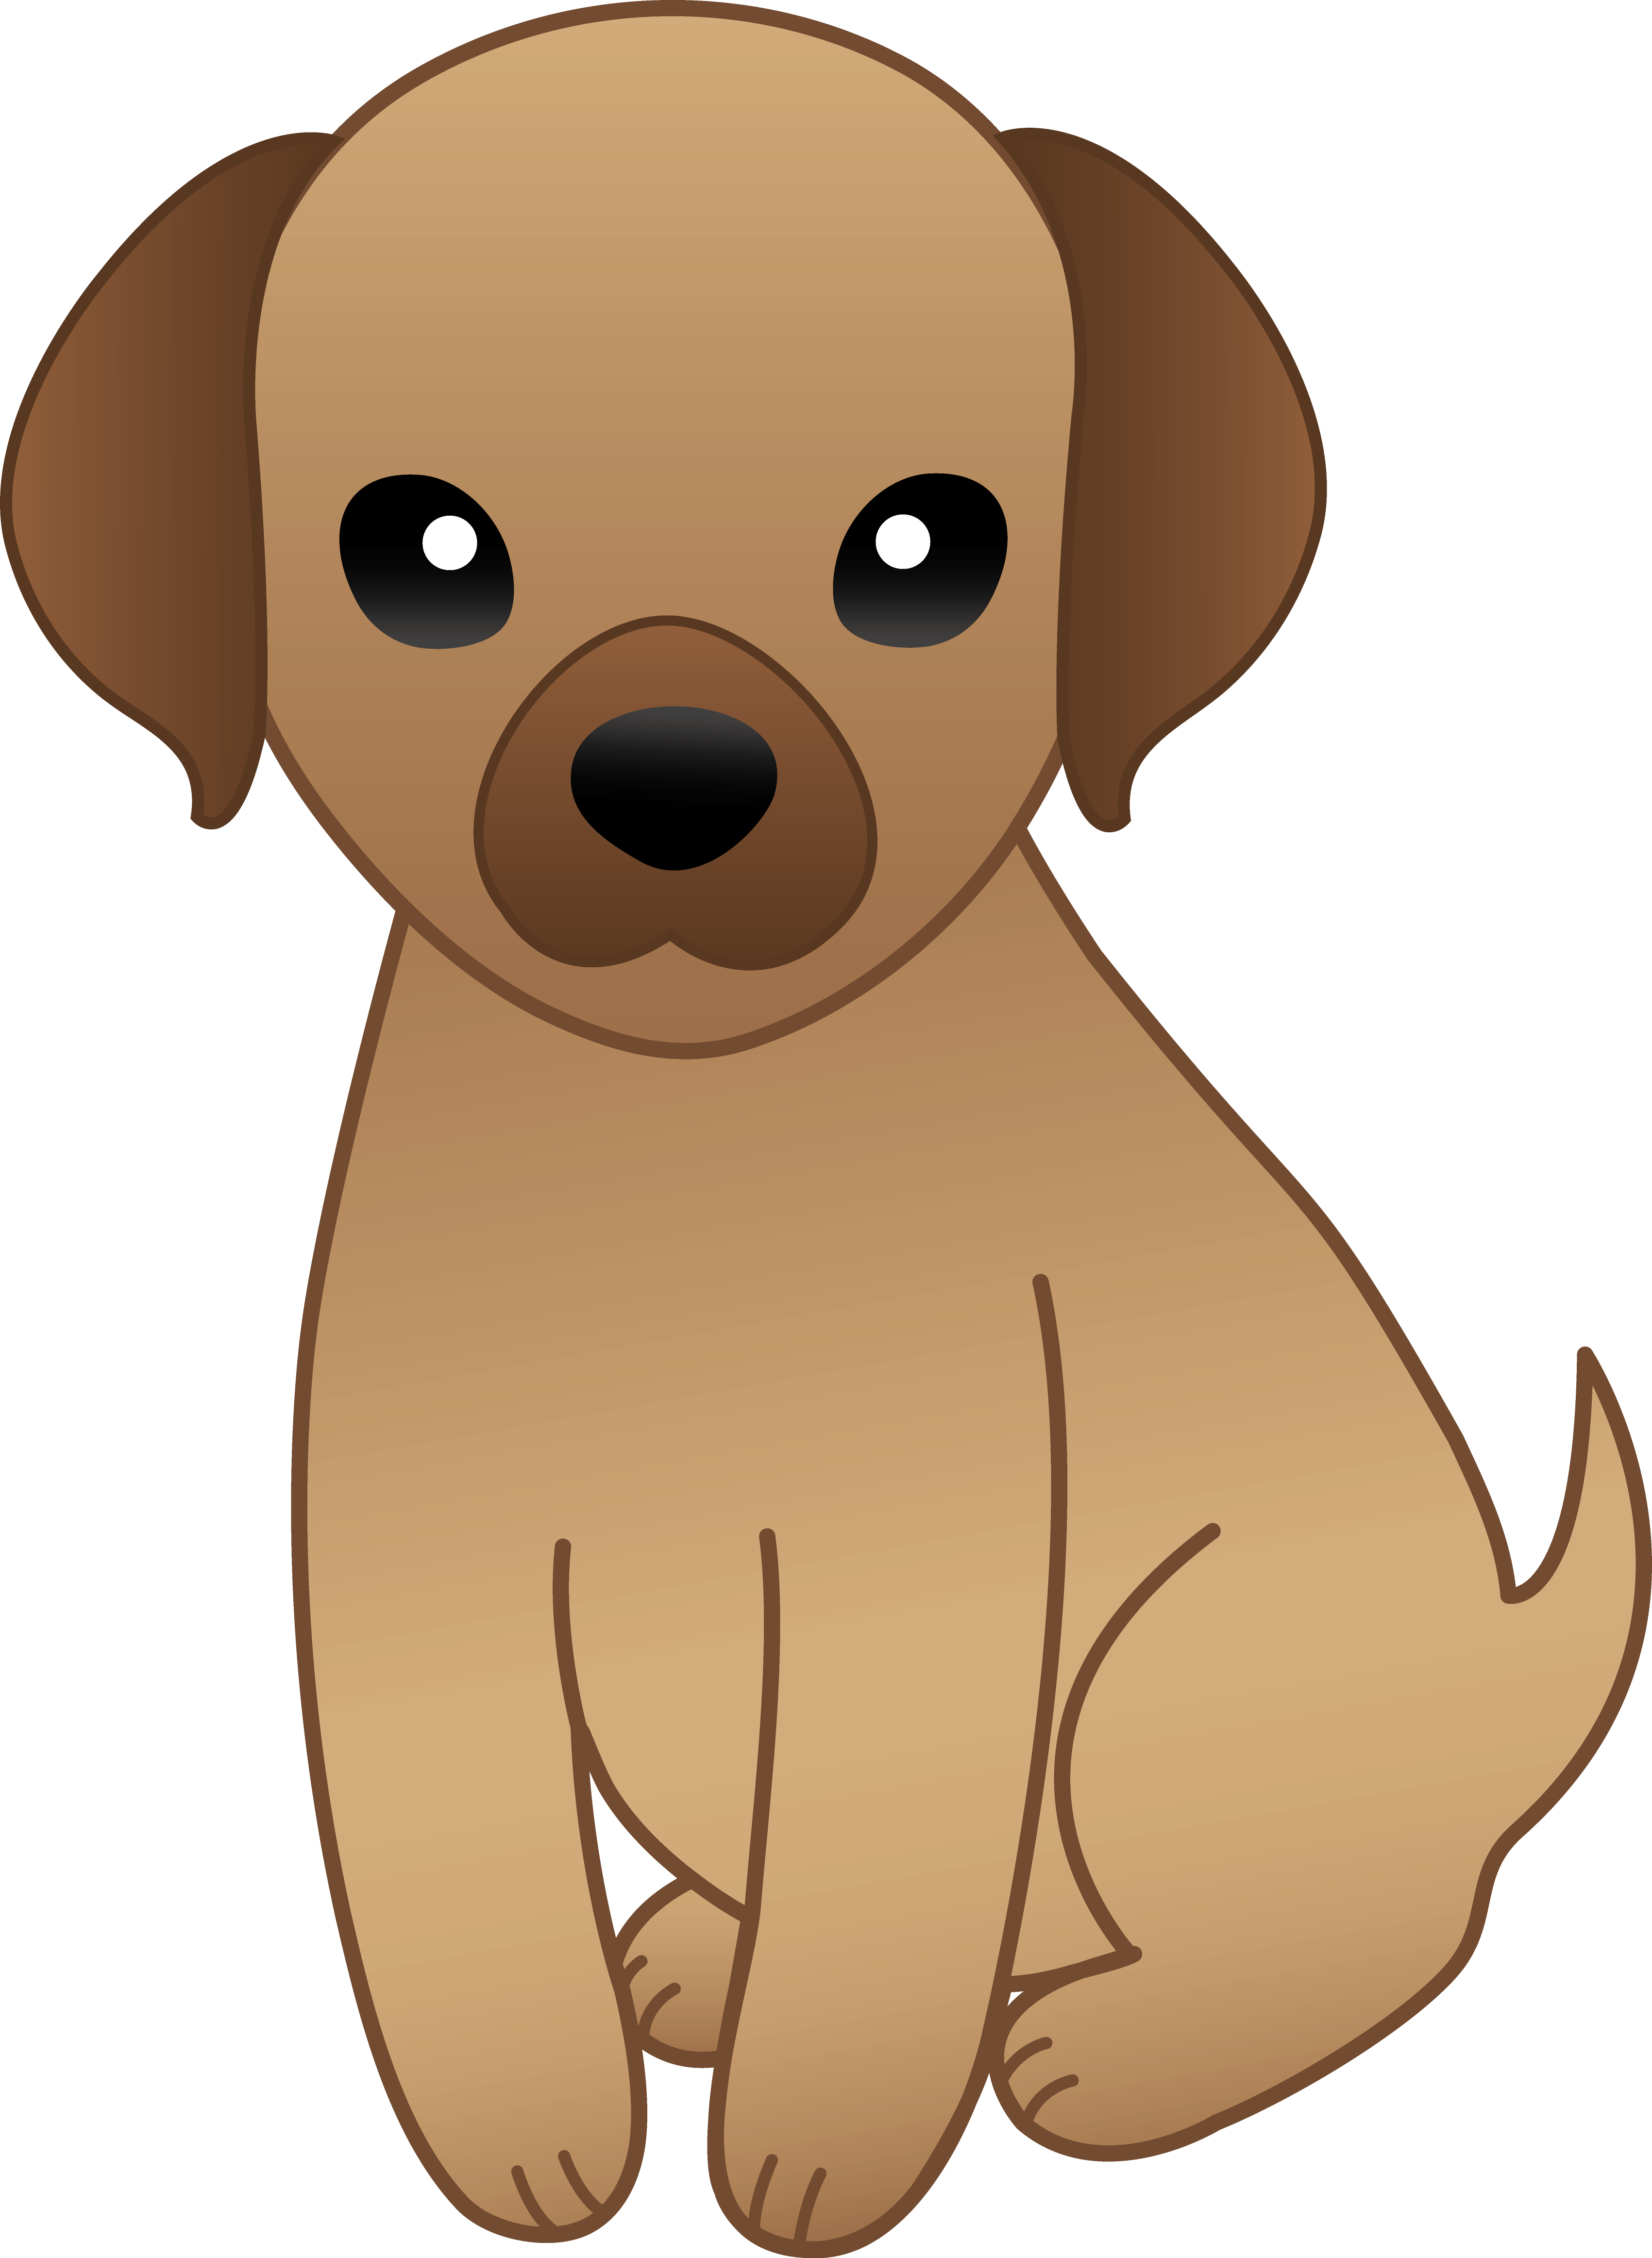 Puppy Dog Cartoon - Cliparts.co